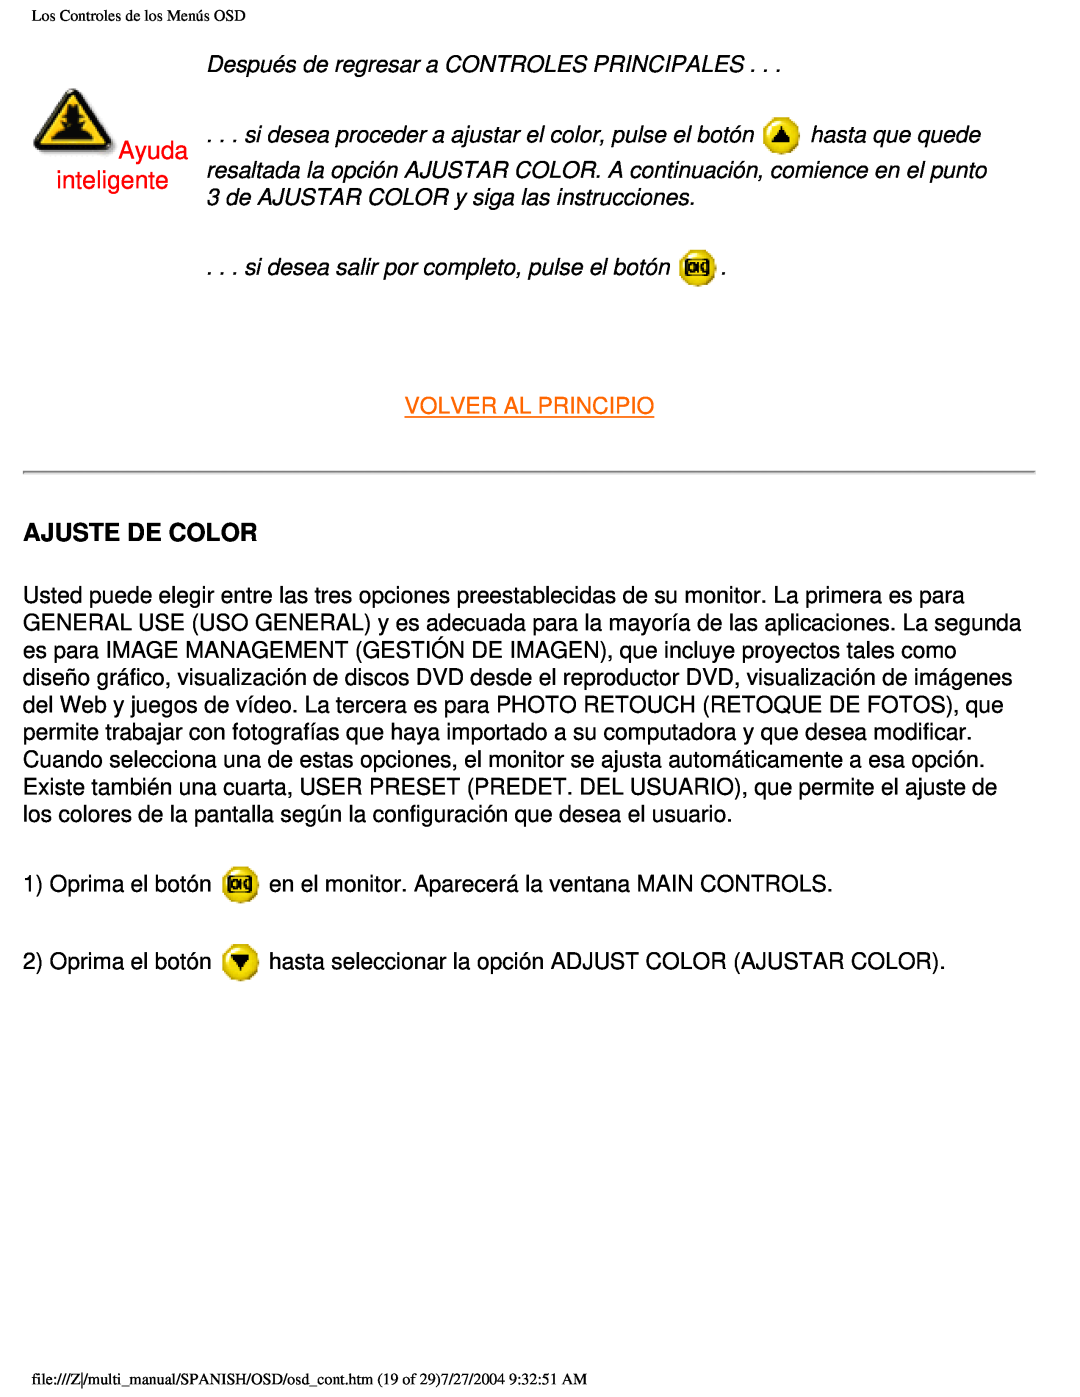 Philips 107B user manual Ayuda inteligente, Ajuste De Color, Después de regresar a CONTROLES PRINCIPALES, hasta que quede 